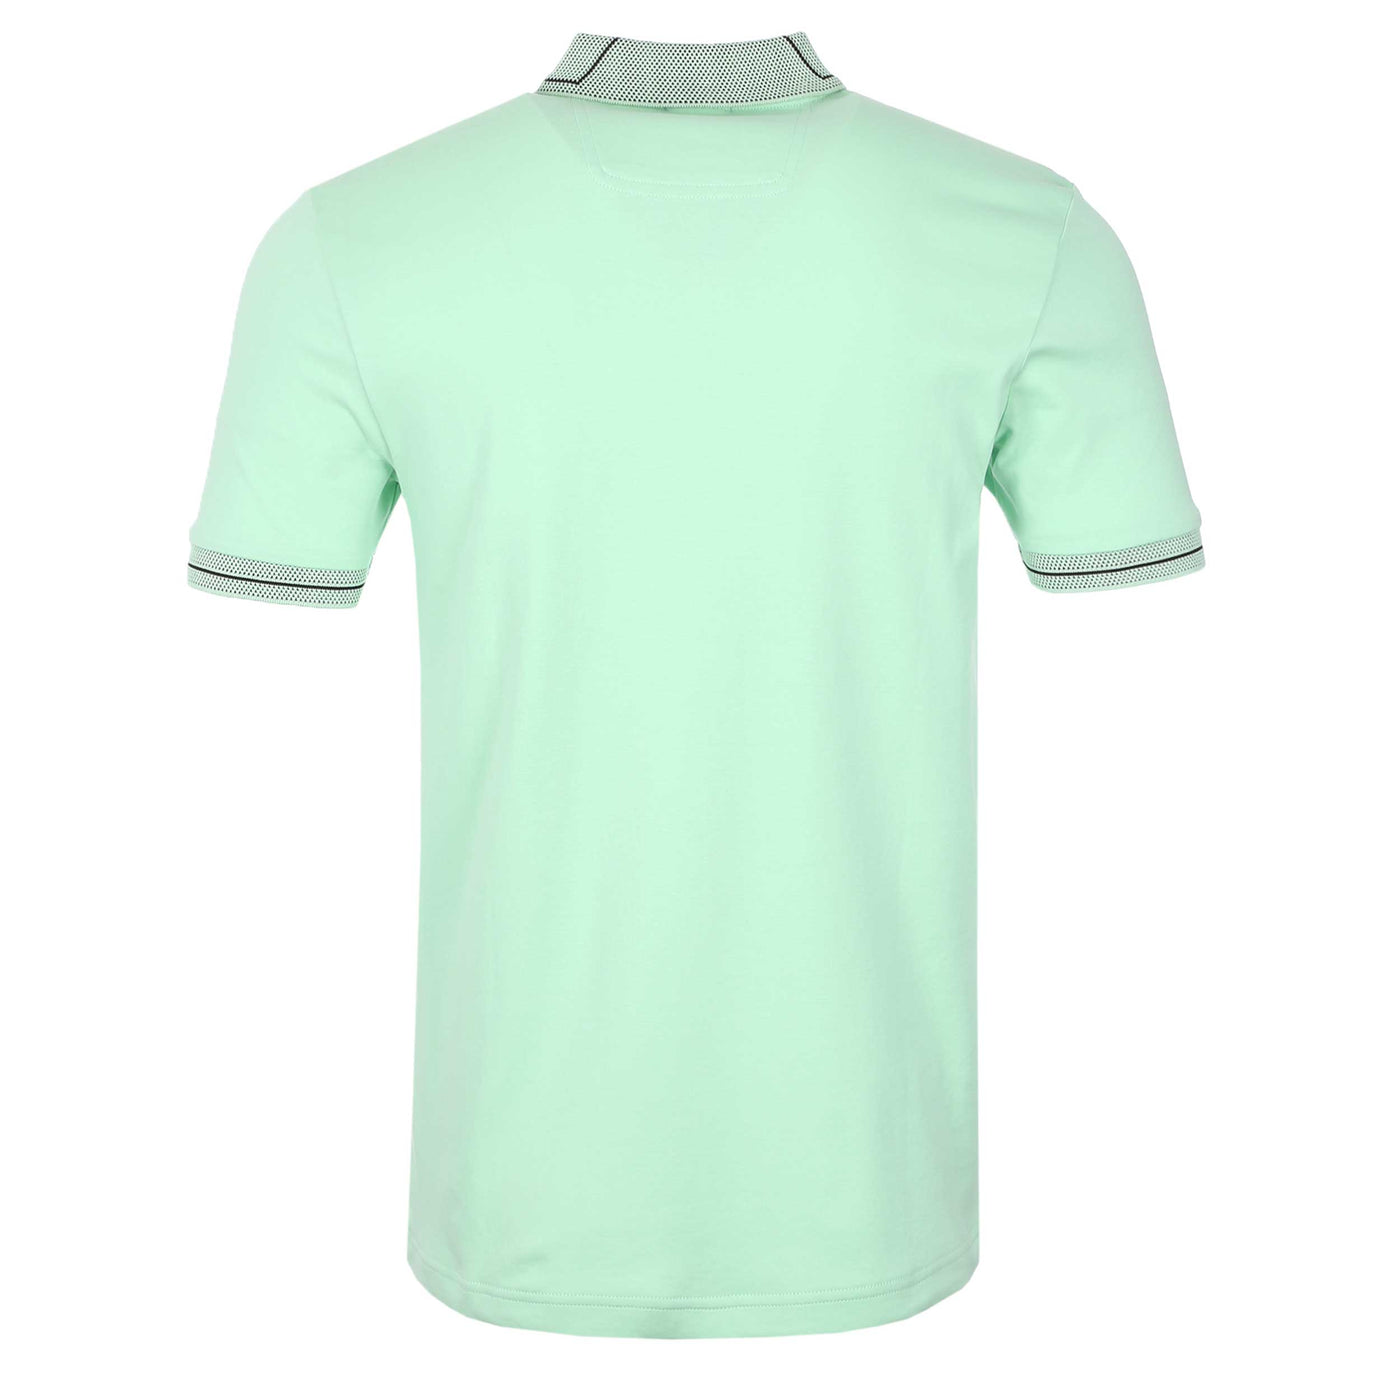 BOSS Paule 1 Polo Shirt in Open Green Back